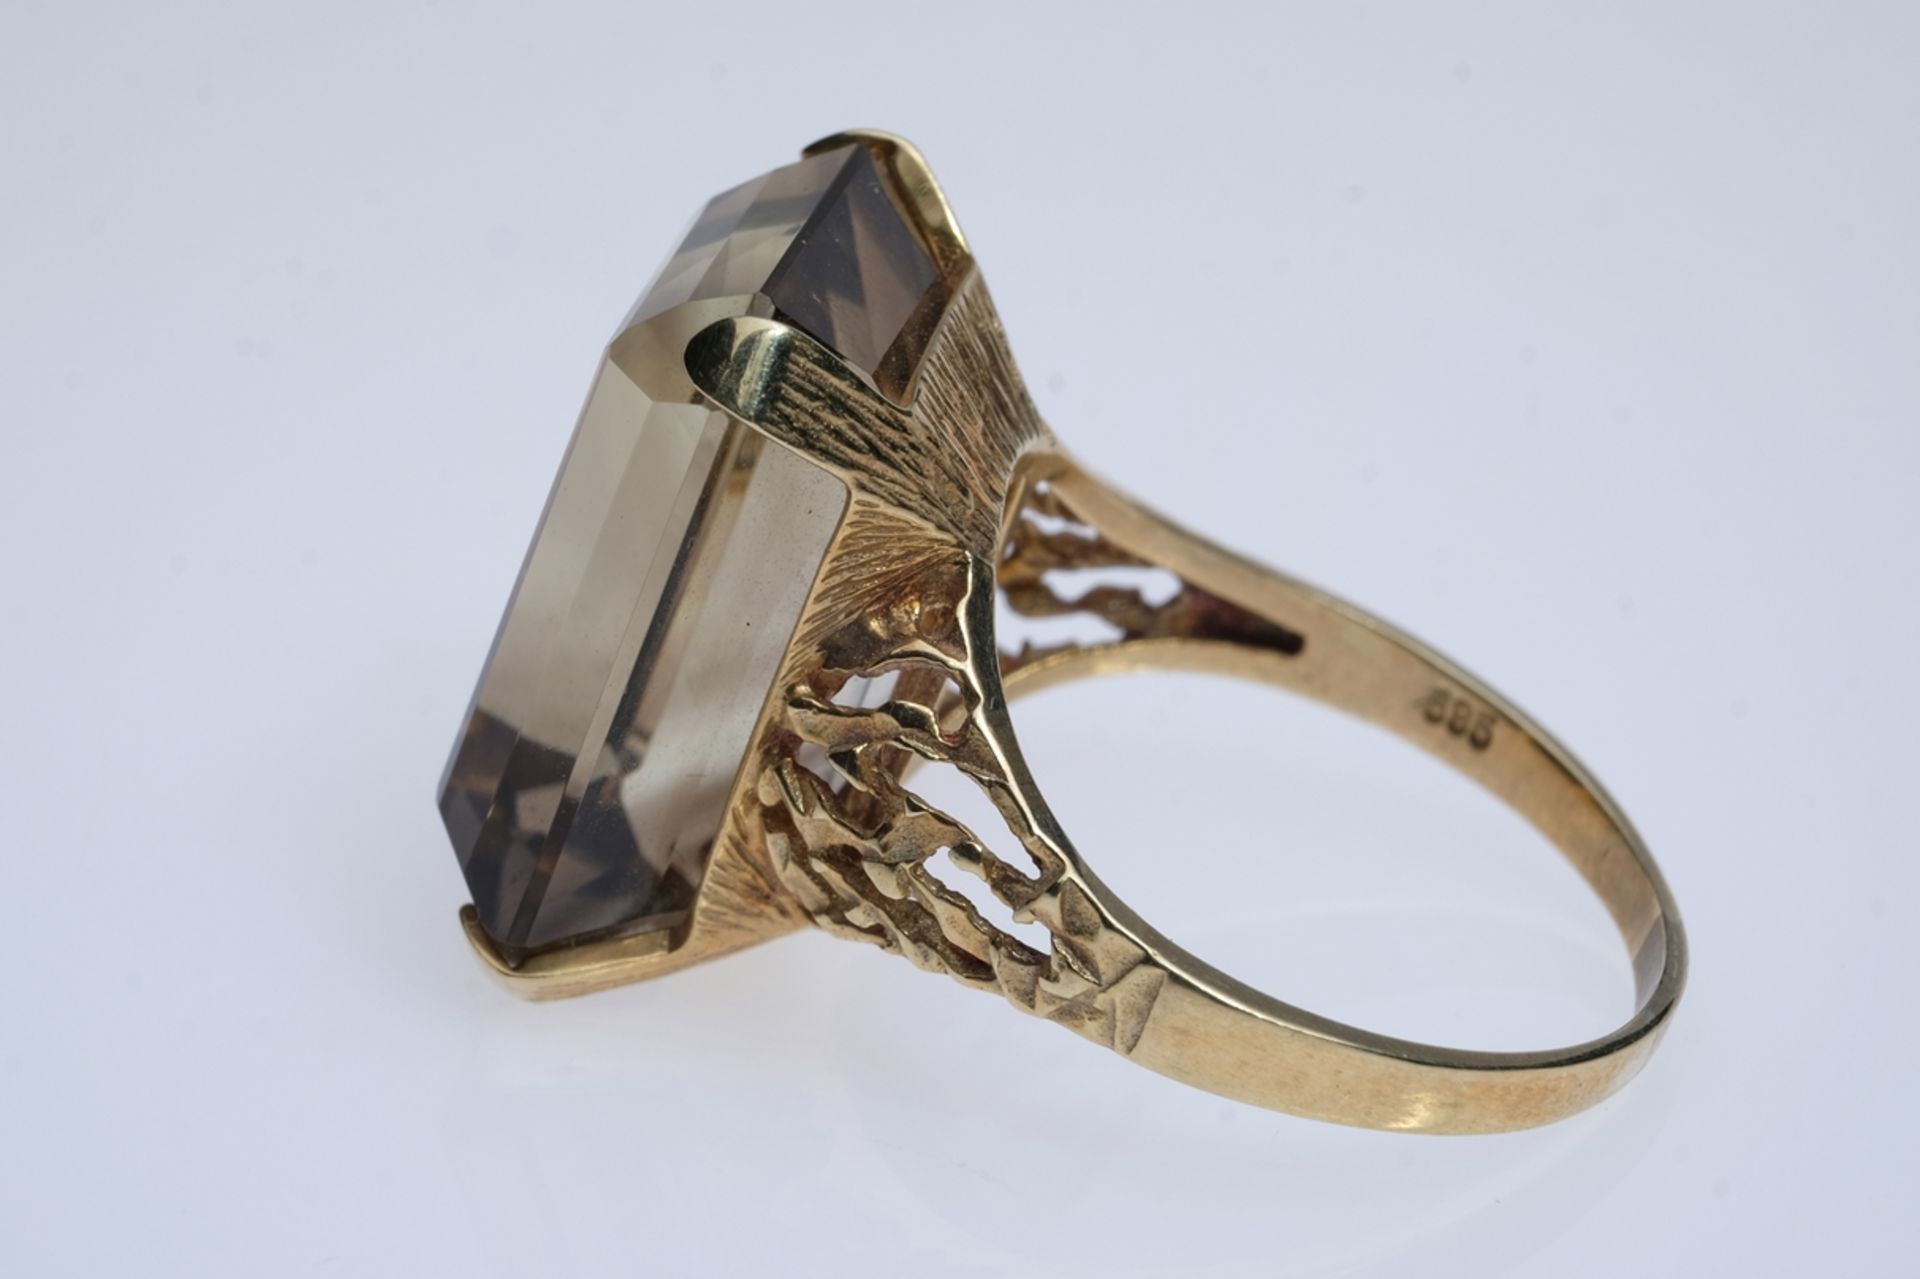 Ring besetzt mit geschliffenem Stein (20x15mm), wohl Smoky Quartz, in vier Krappen filigran gefasst - Bild 3 aus 3